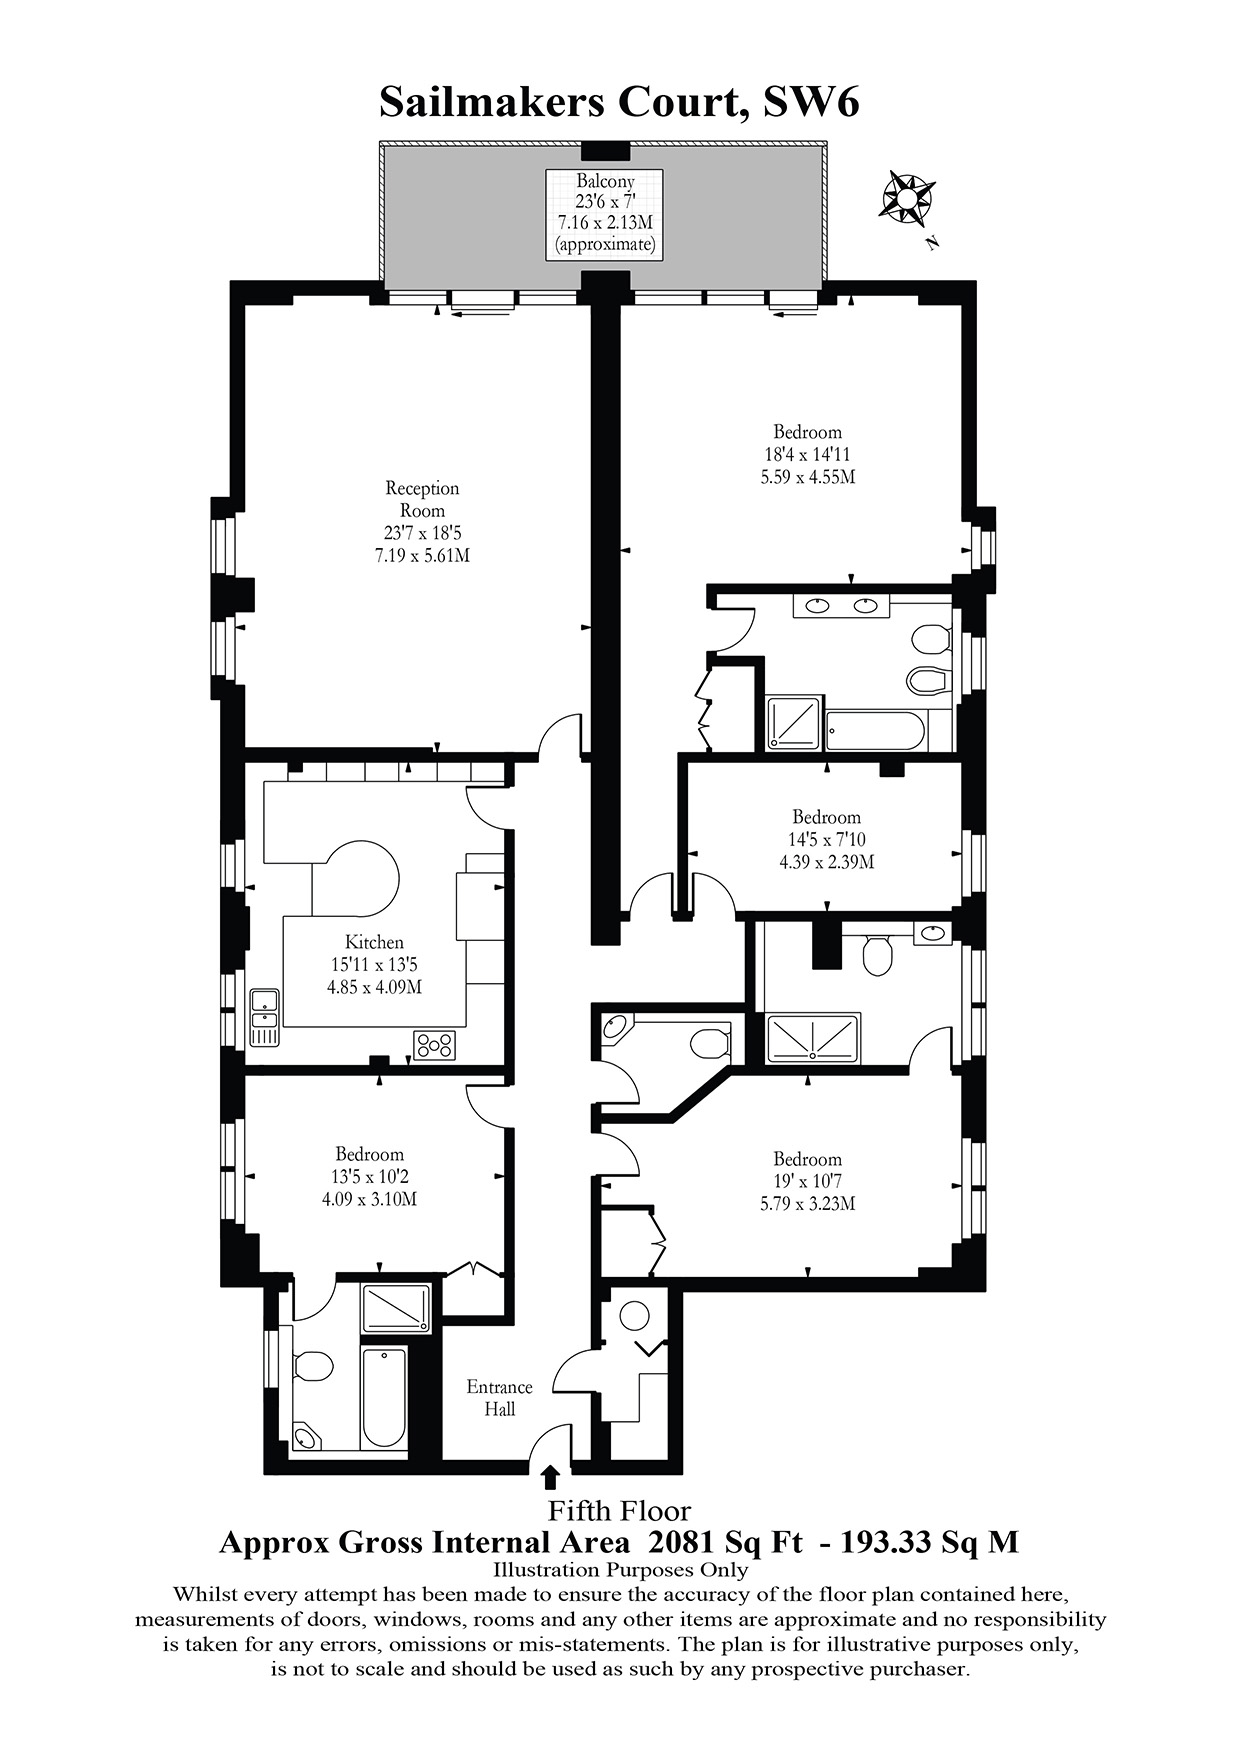 4 Bedrooms  to rent in Sailmakers Court, William Morris Way, Fulham SW6